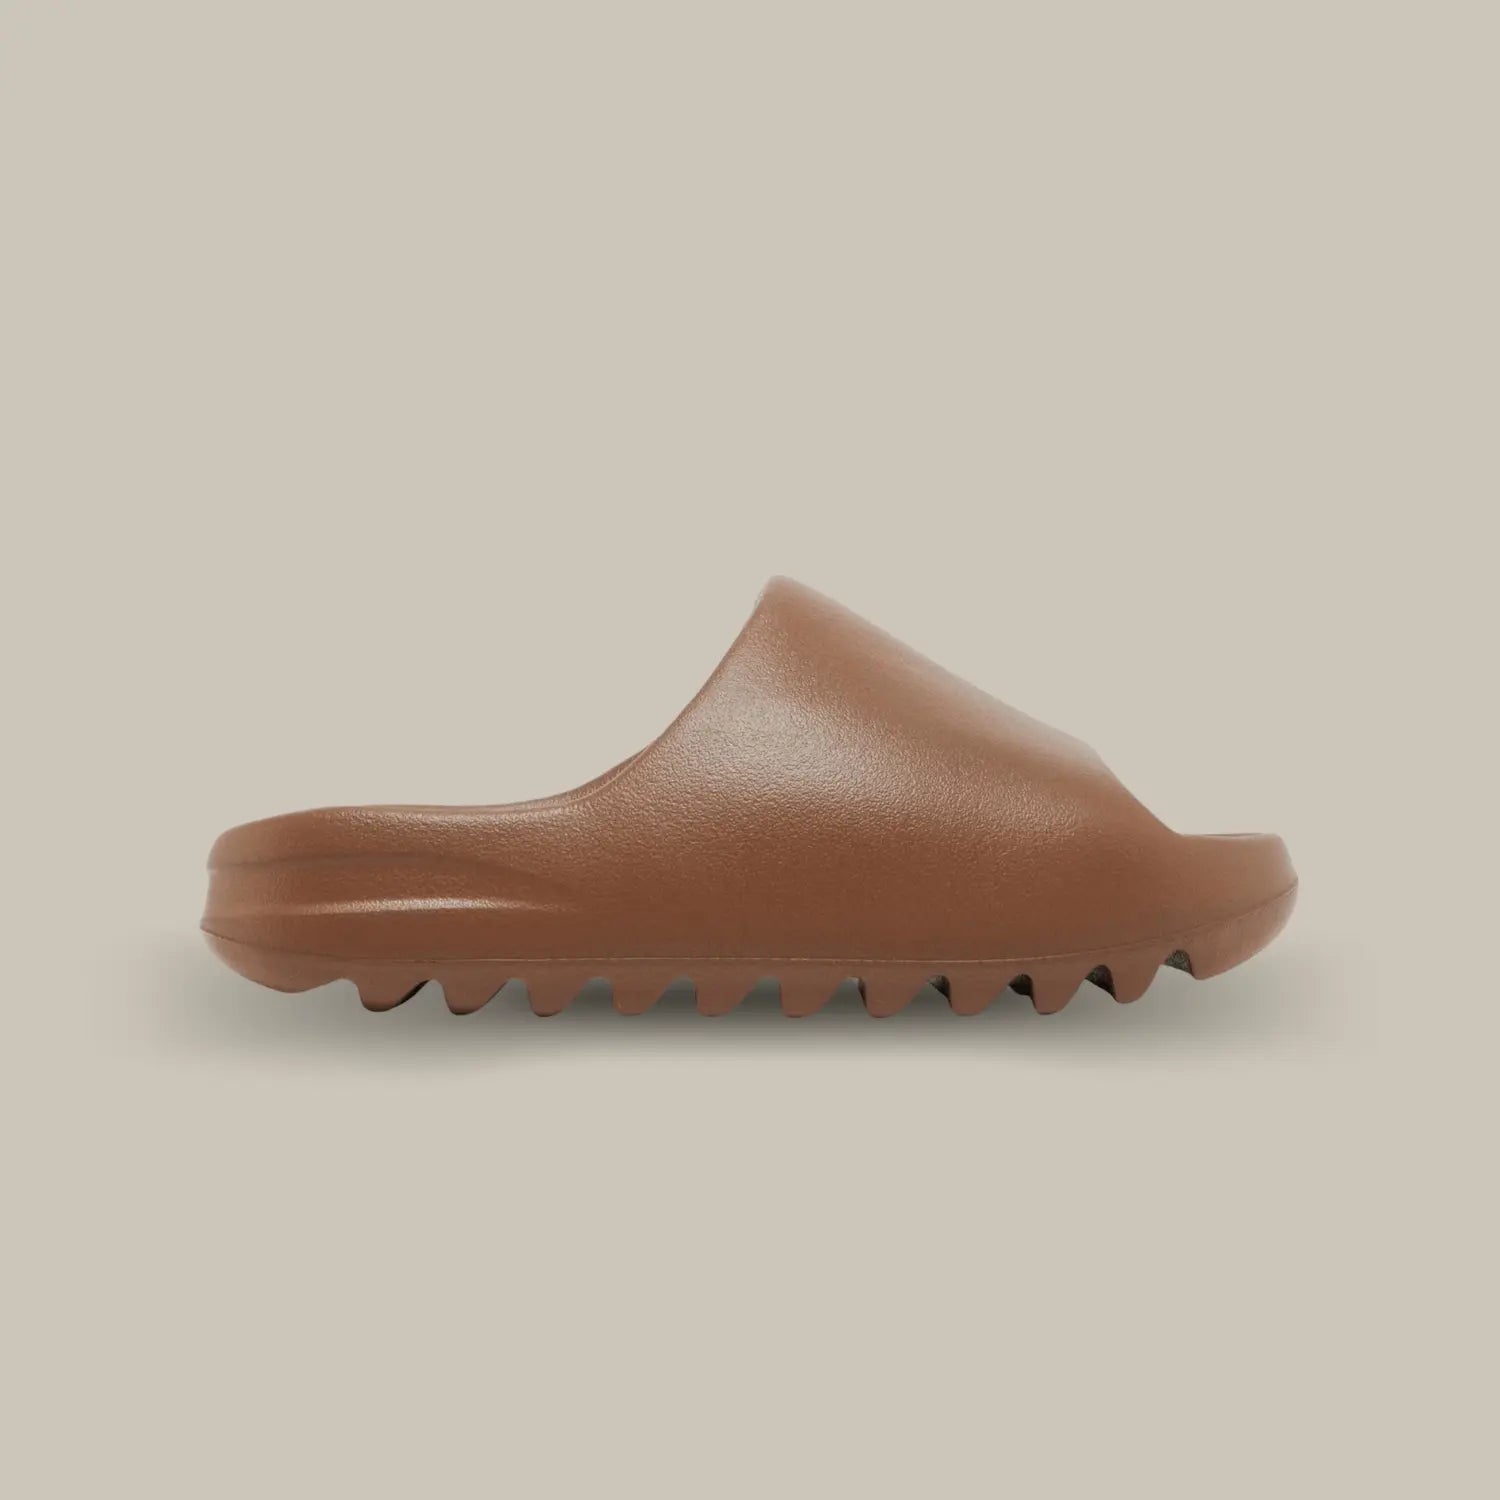 La Adidas Yeezy Slide Flax arrive avec son coloris marron chocolat. Elle possède sa célèbre mousse EVA pour un confort sans pareil. On retrouve également son aspect monobloc avec une outsole dentelée.